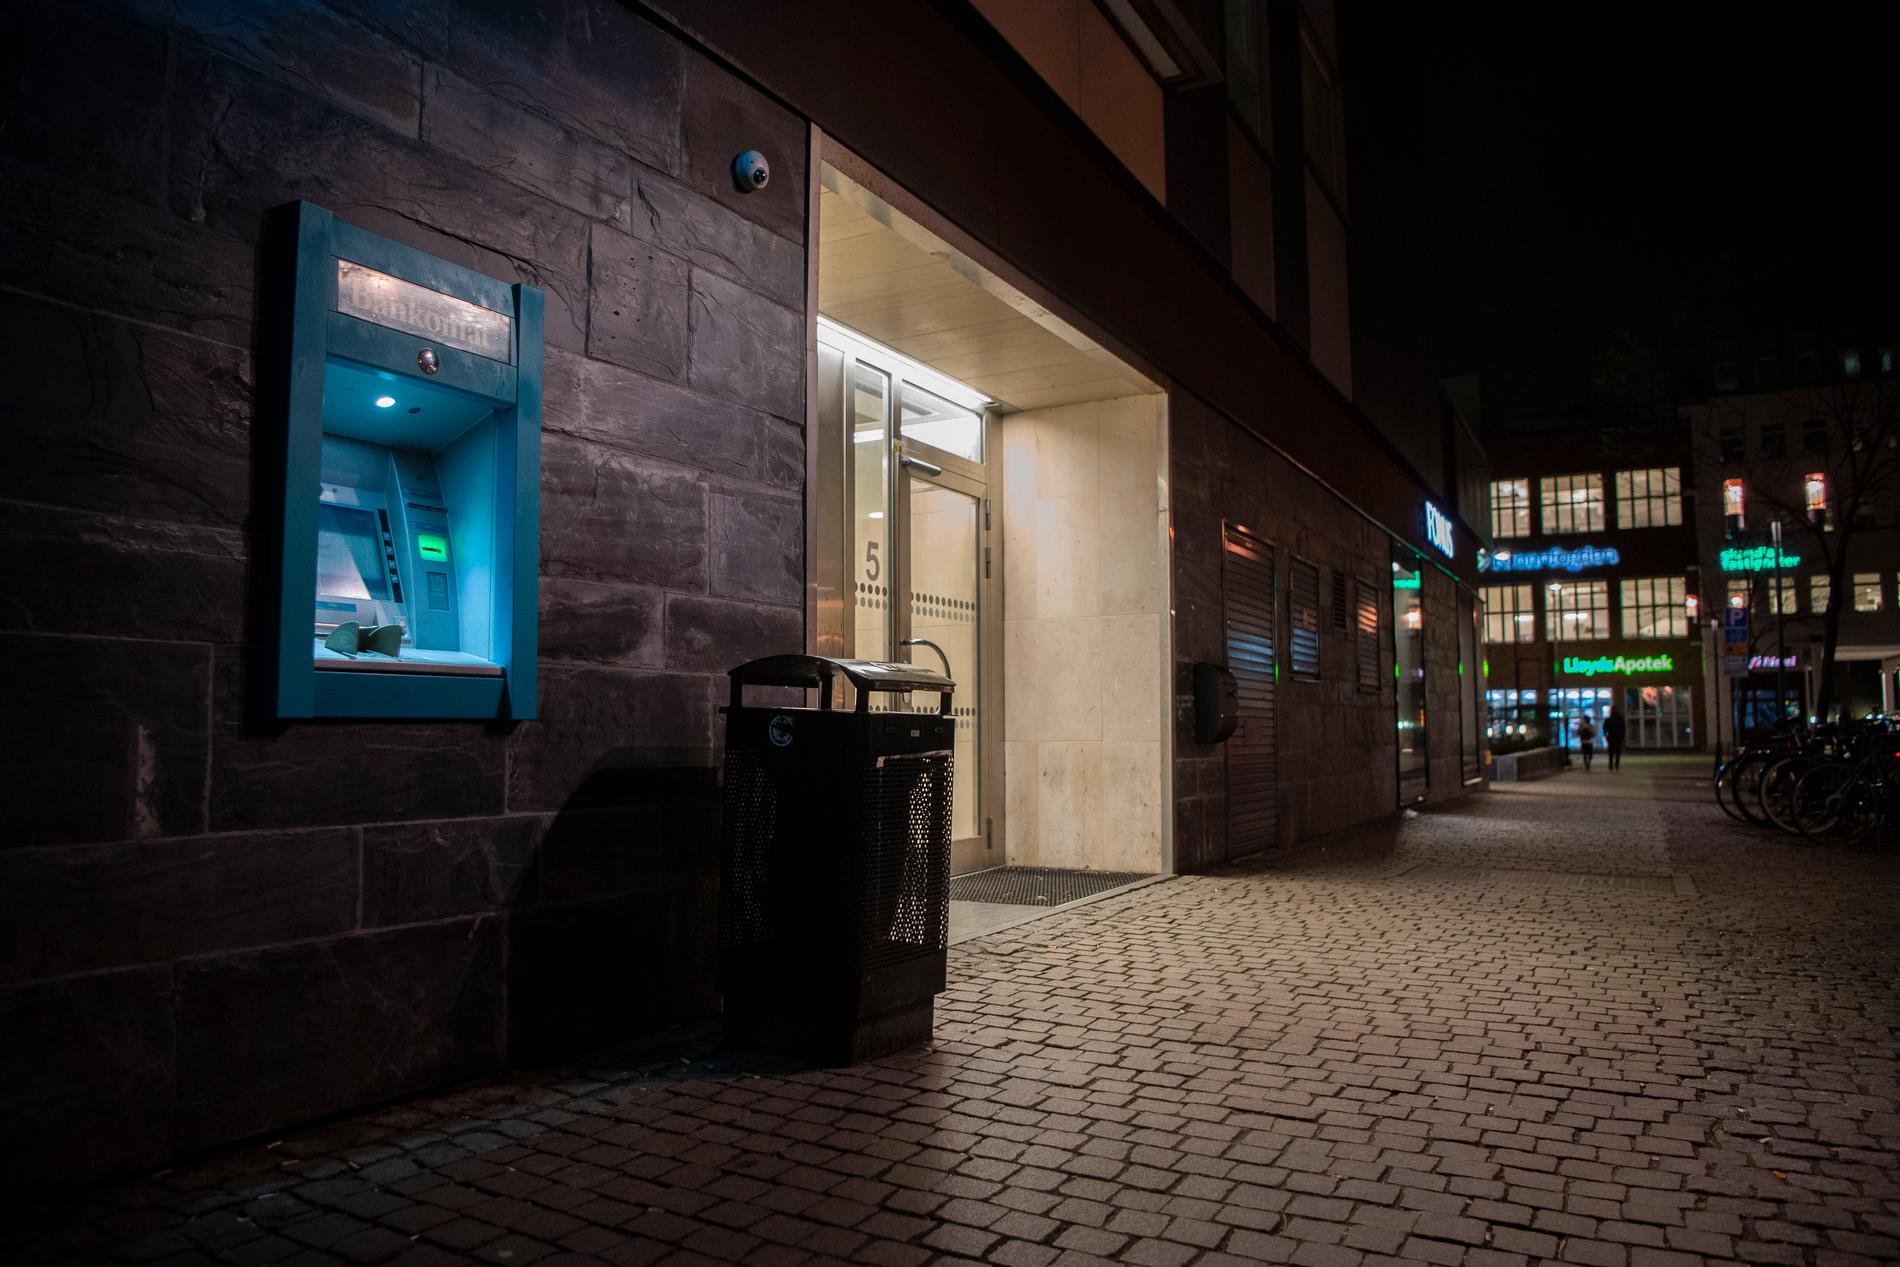 På måndagskvällen sågs en knivman vid en bankomat i Sundbyberg.